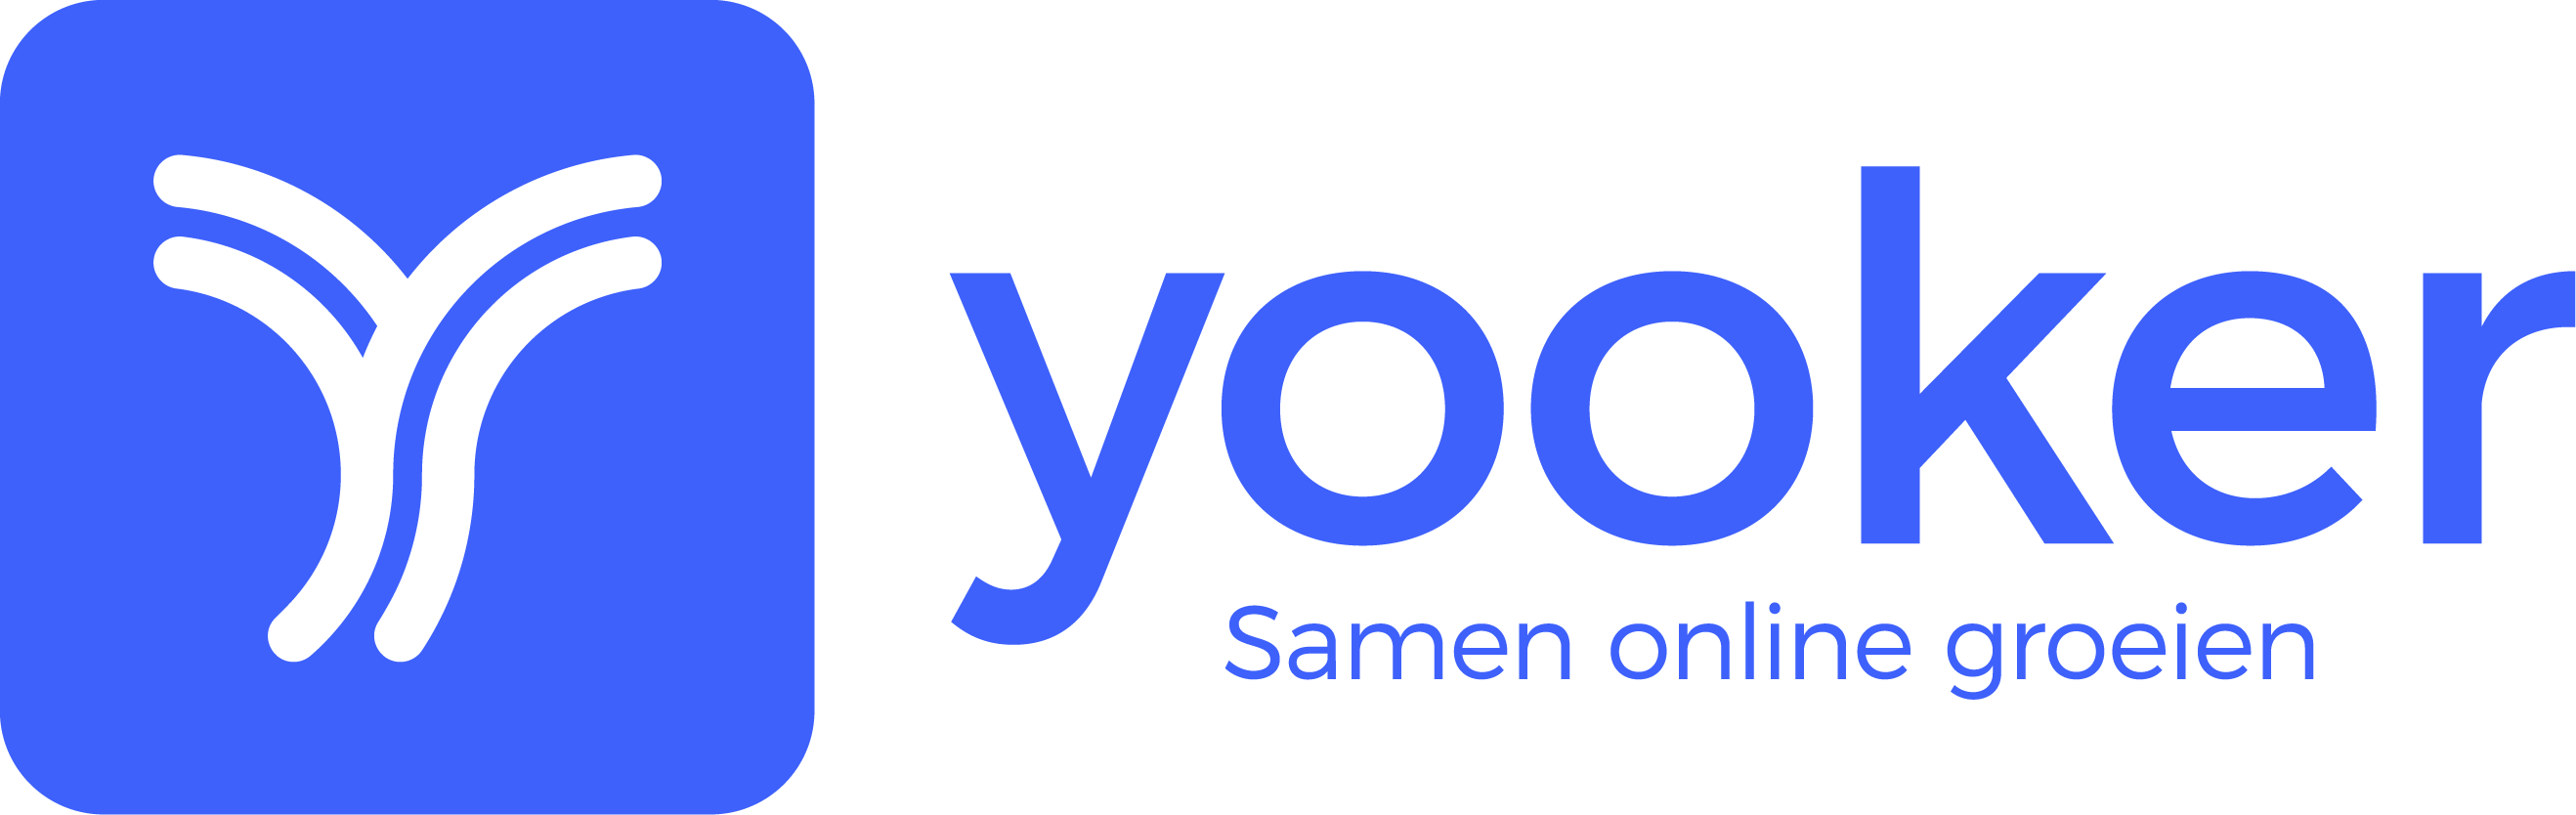 yooker logo